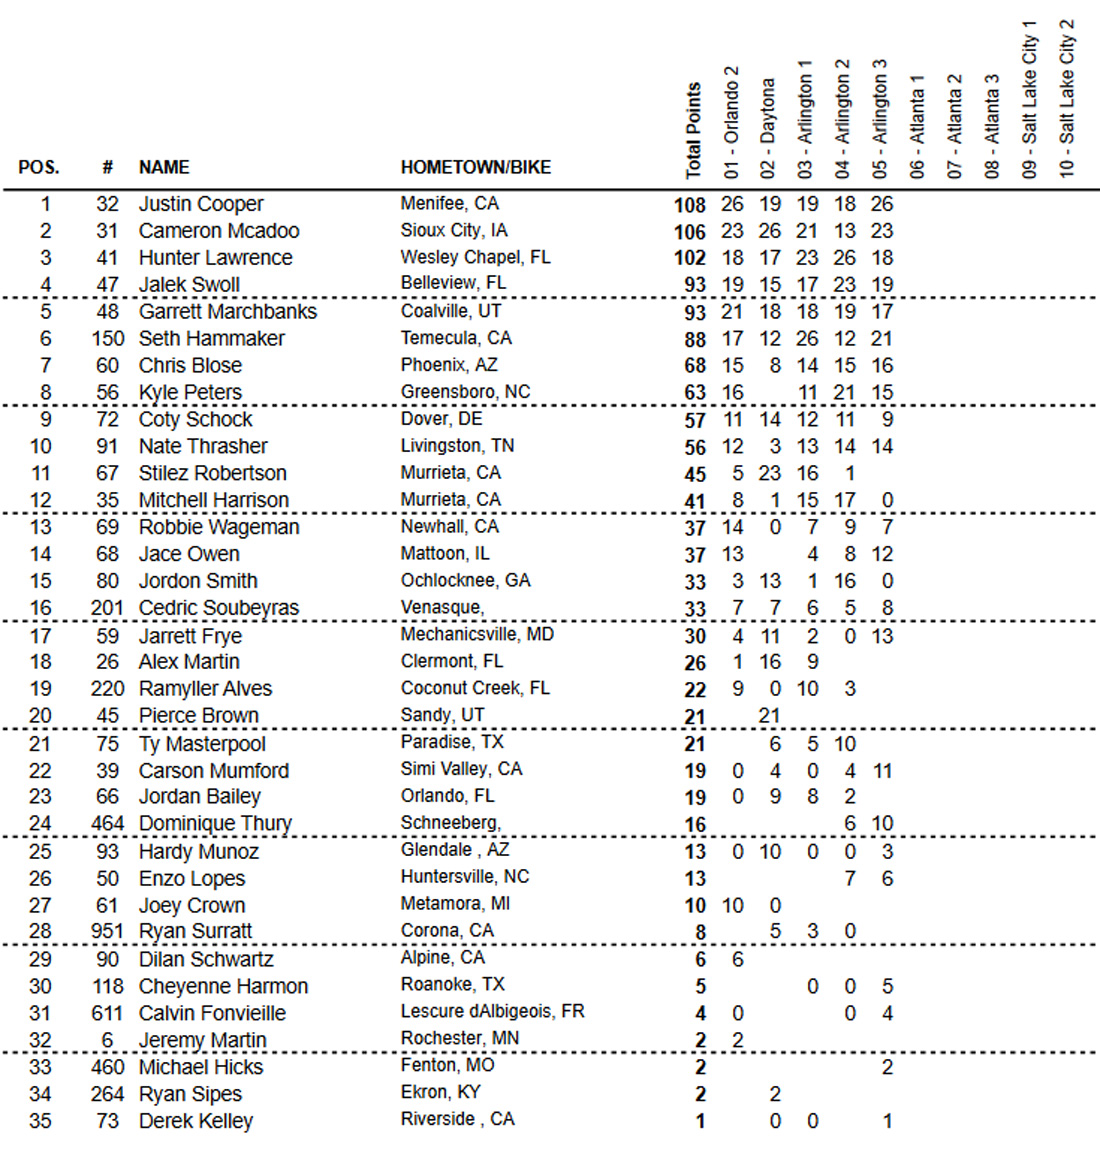 Classificação geral do AMA Supercross 2021 após 12 etapas - categoria 250